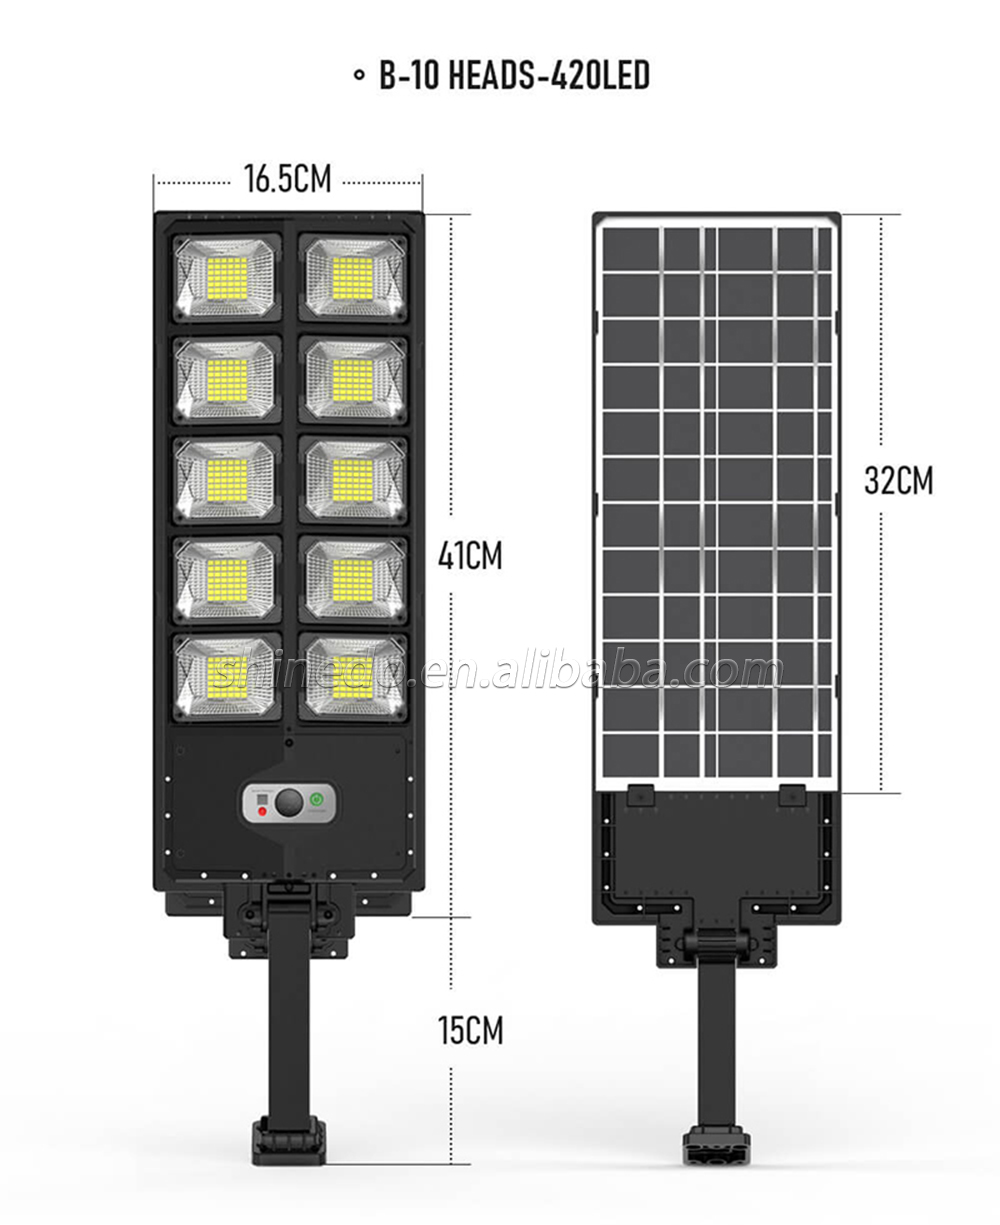 Outdoor Luminous LED Solar full wattage Street Light IP65 waterproof